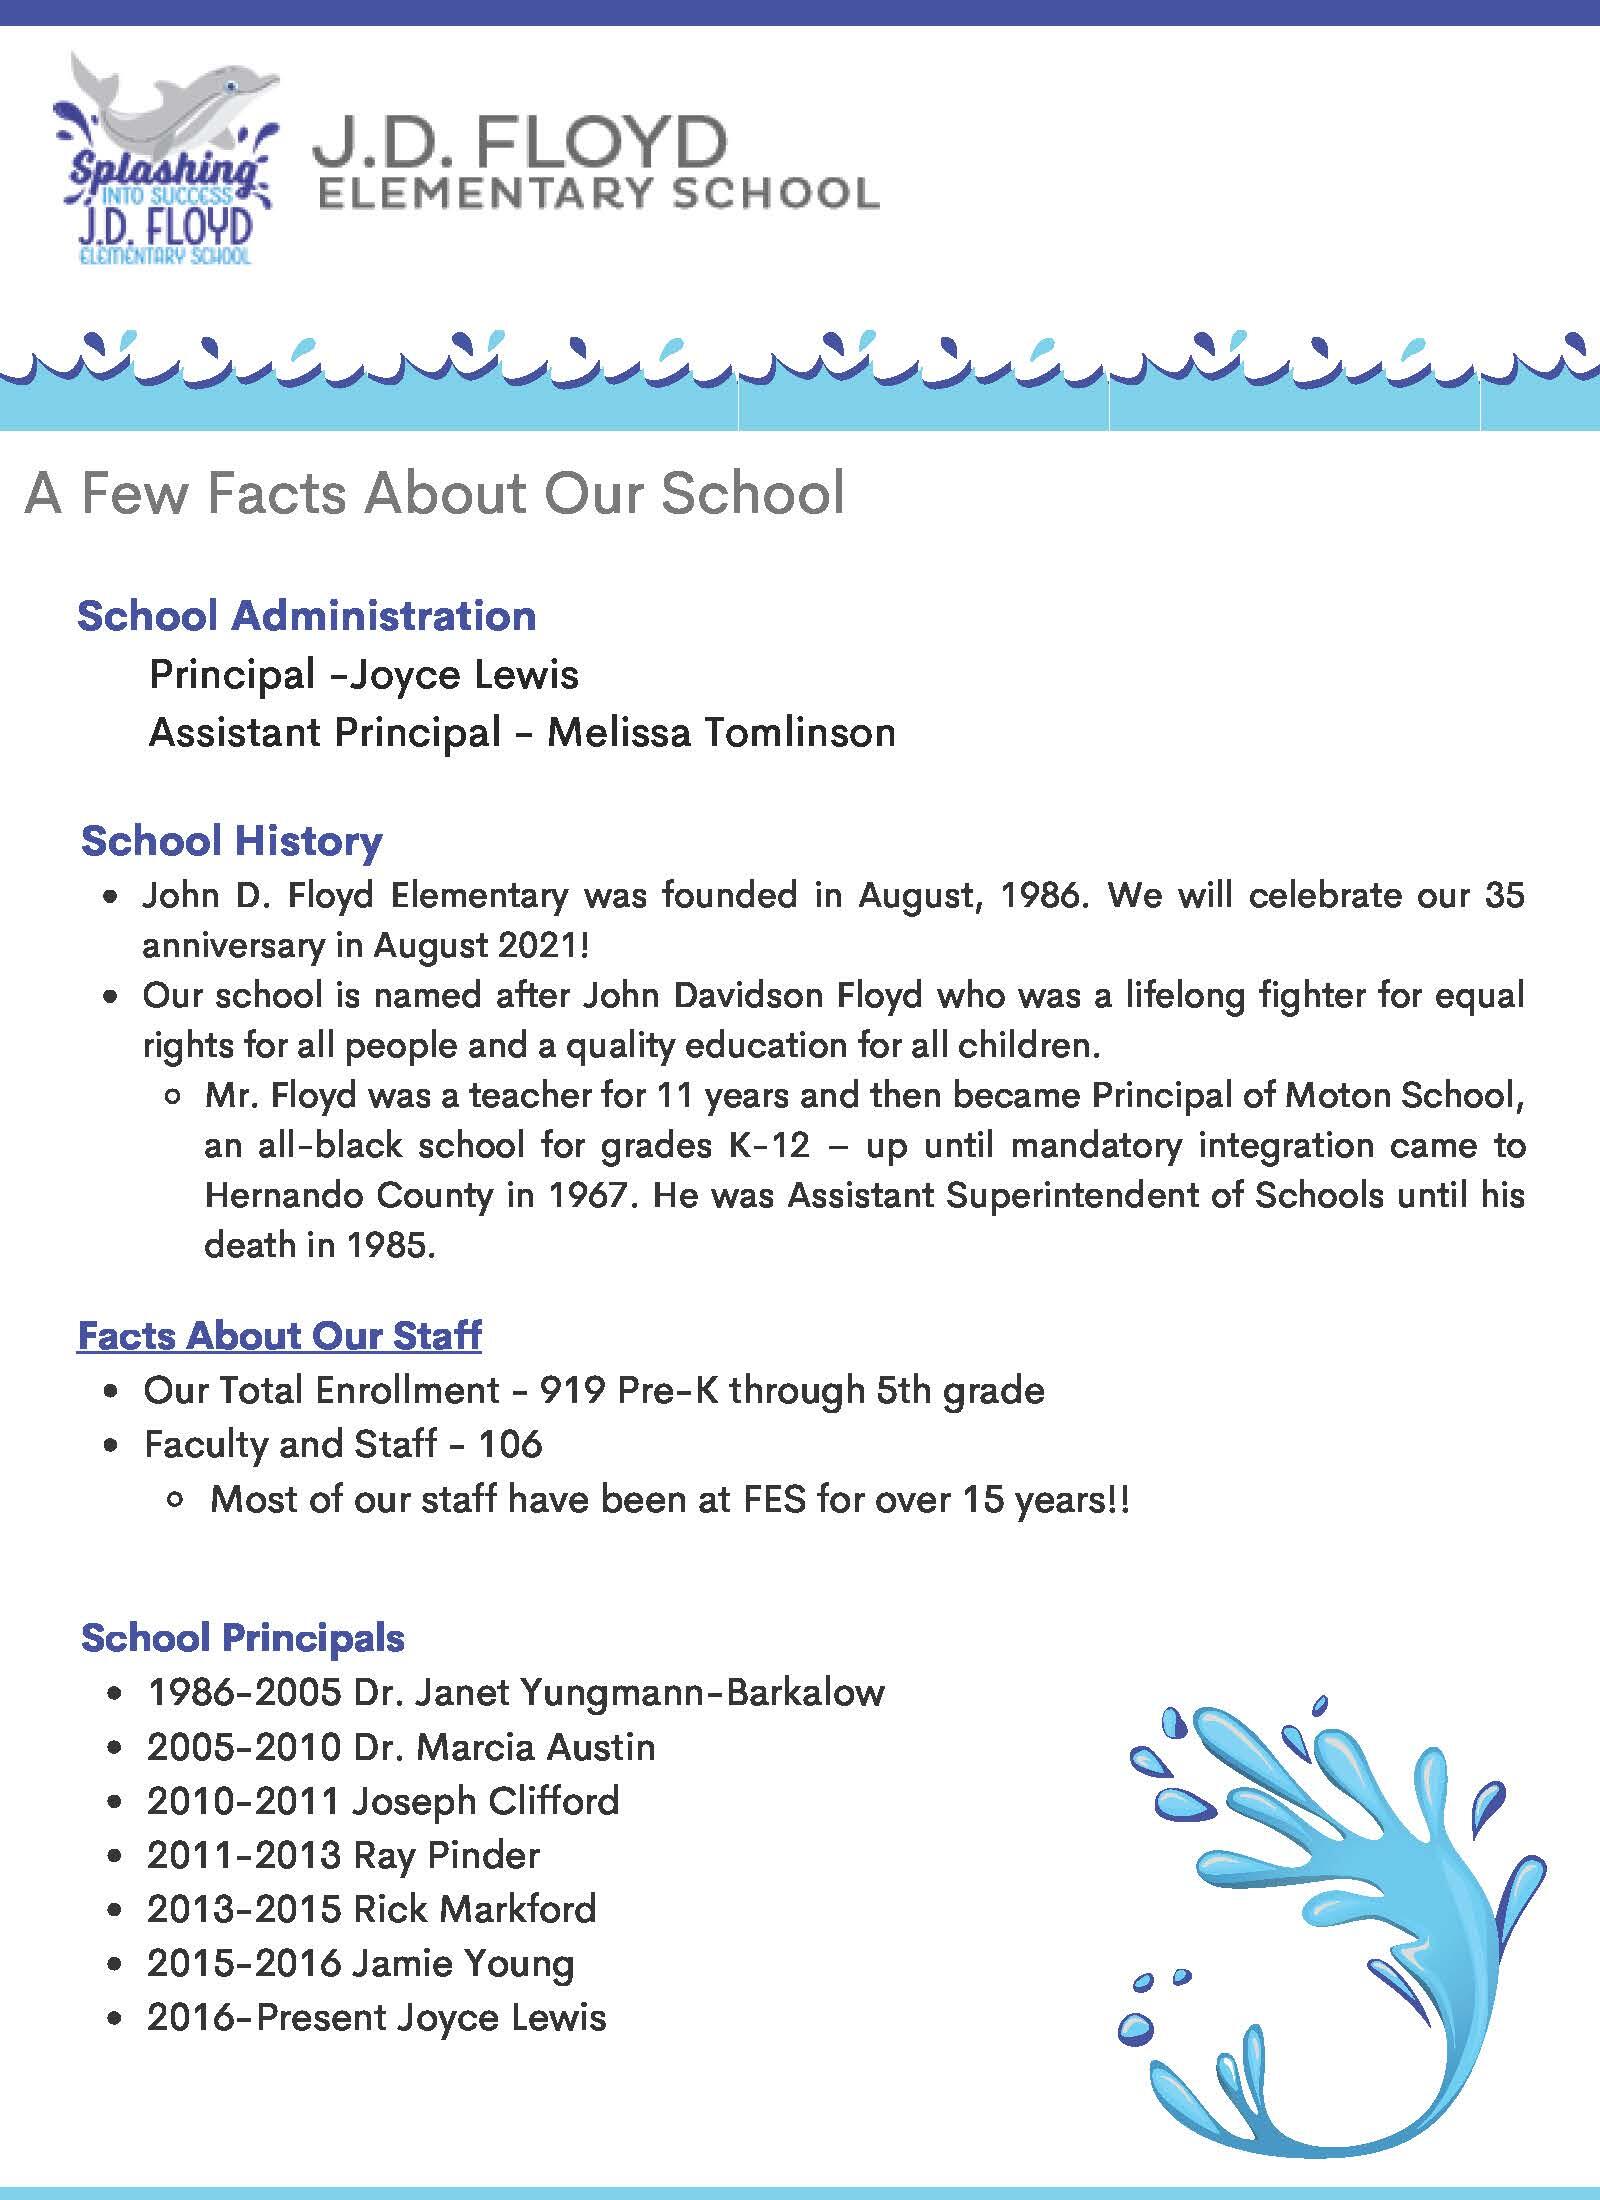 JD Floyd Elementary school information